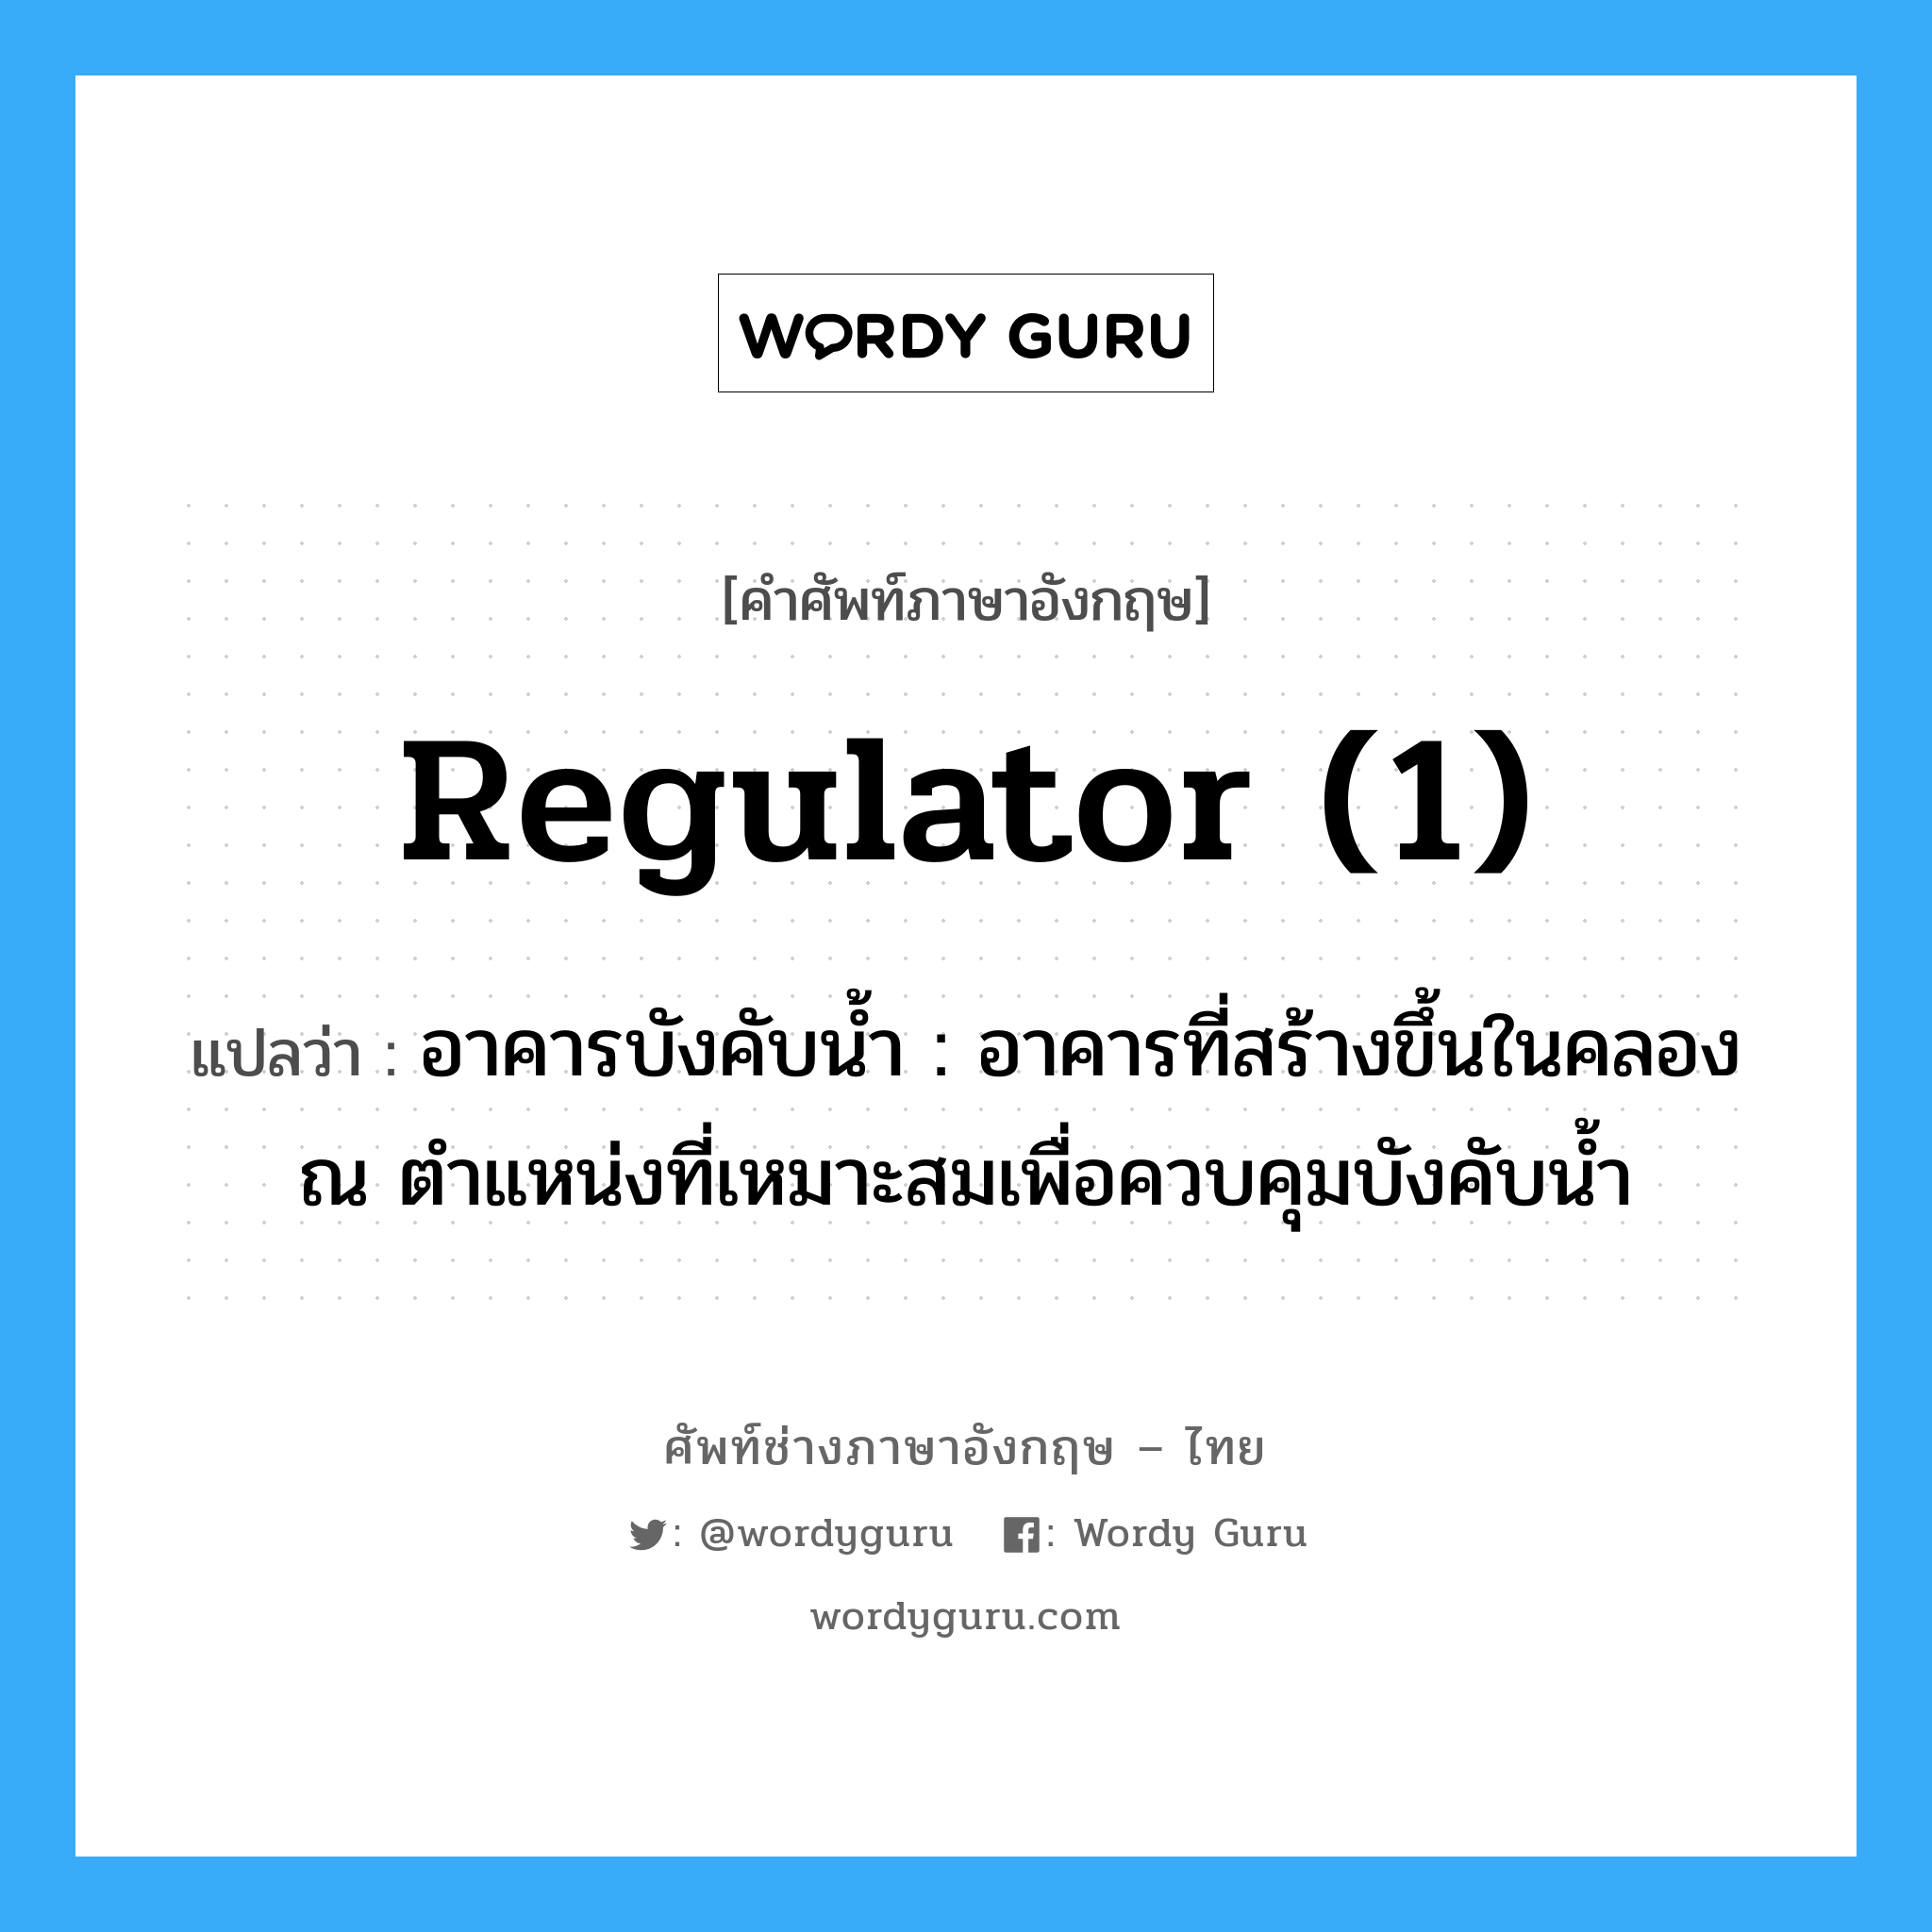 regulator (1) แปลว่า?, คำศัพท์ช่างภาษาอังกฤษ - ไทย regulator (1) คำศัพท์ภาษาอังกฤษ regulator (1) แปลว่า อาคารบังคับน้ำ : อาคารที่สร้างขึ้นในคลอง ณ ตำแหน่งที่เหมาะสมเพื่อควบคุมบังคับน้ำ